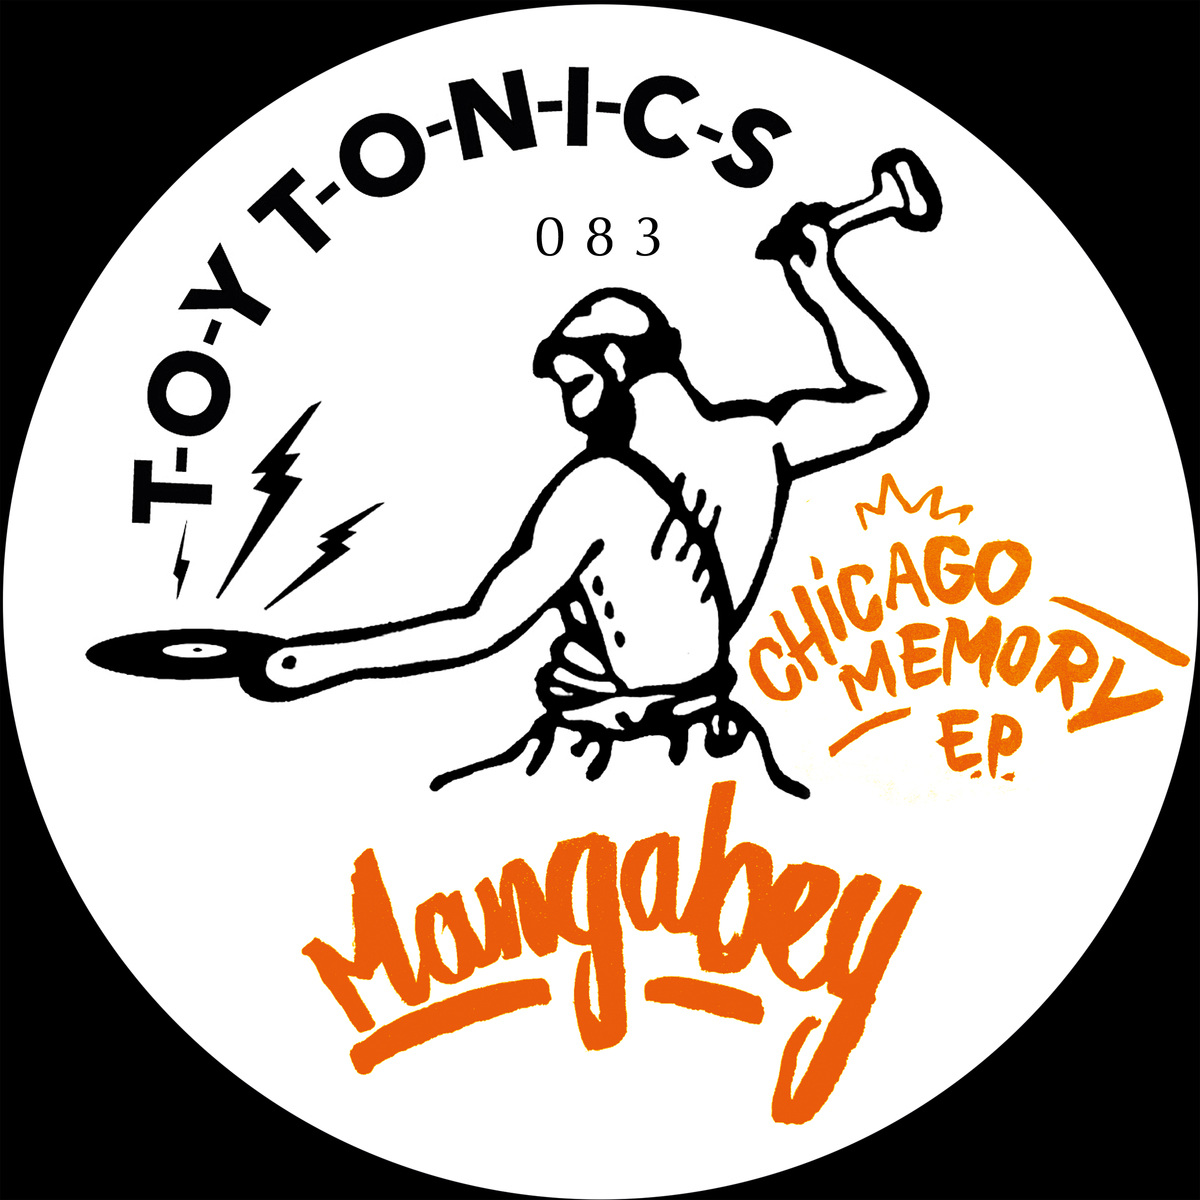 Mangabey - Chicago Memory EP / Toy Tonics